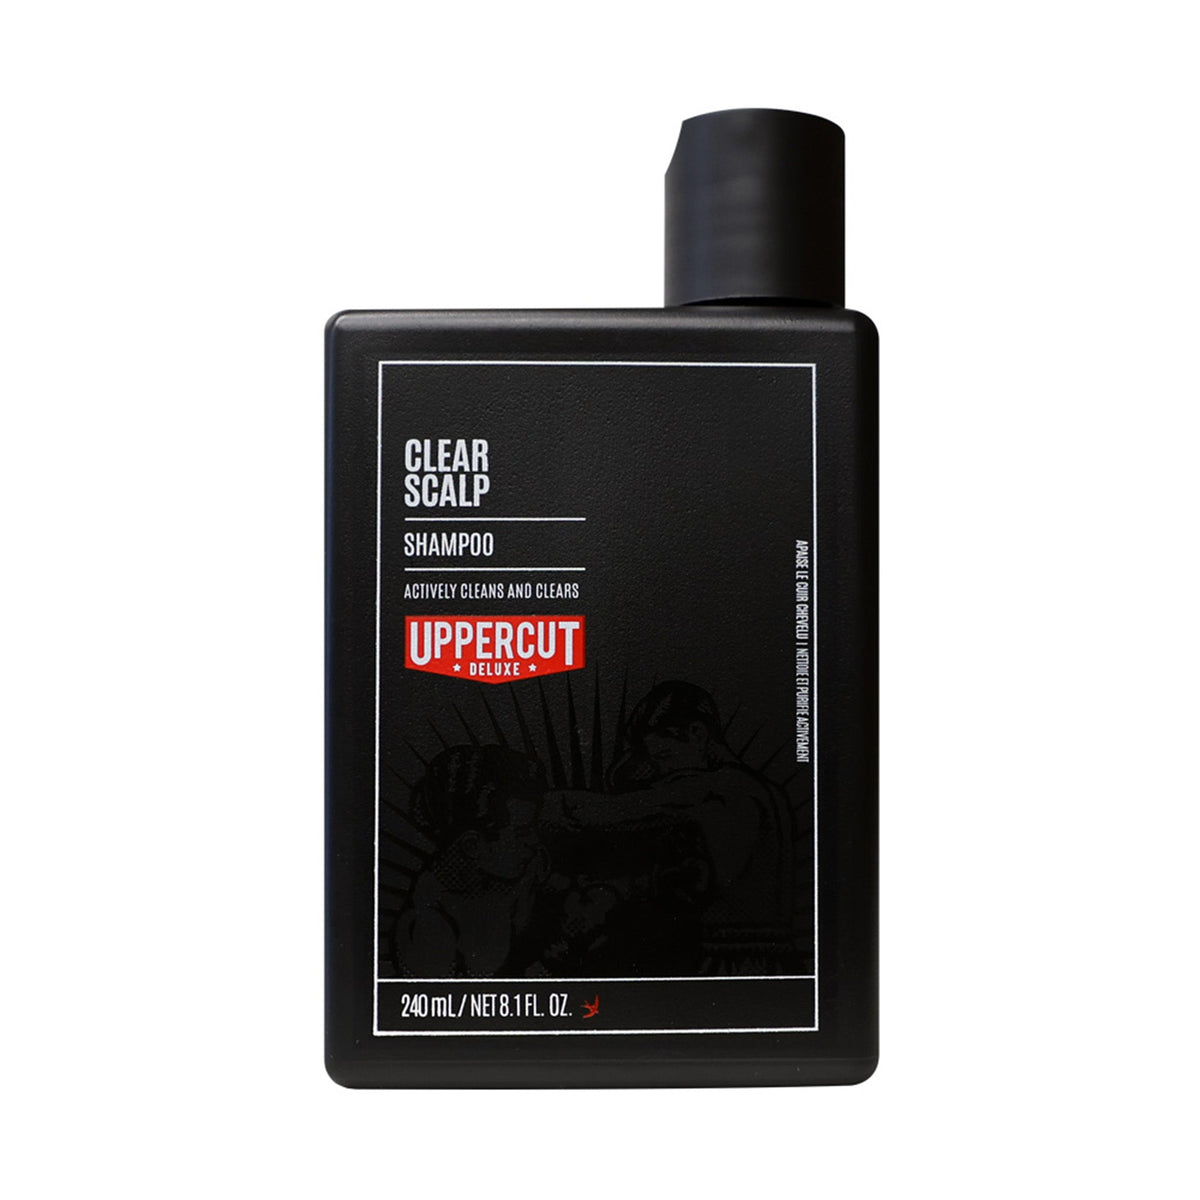 Clear Scalp Shampoo 240ml